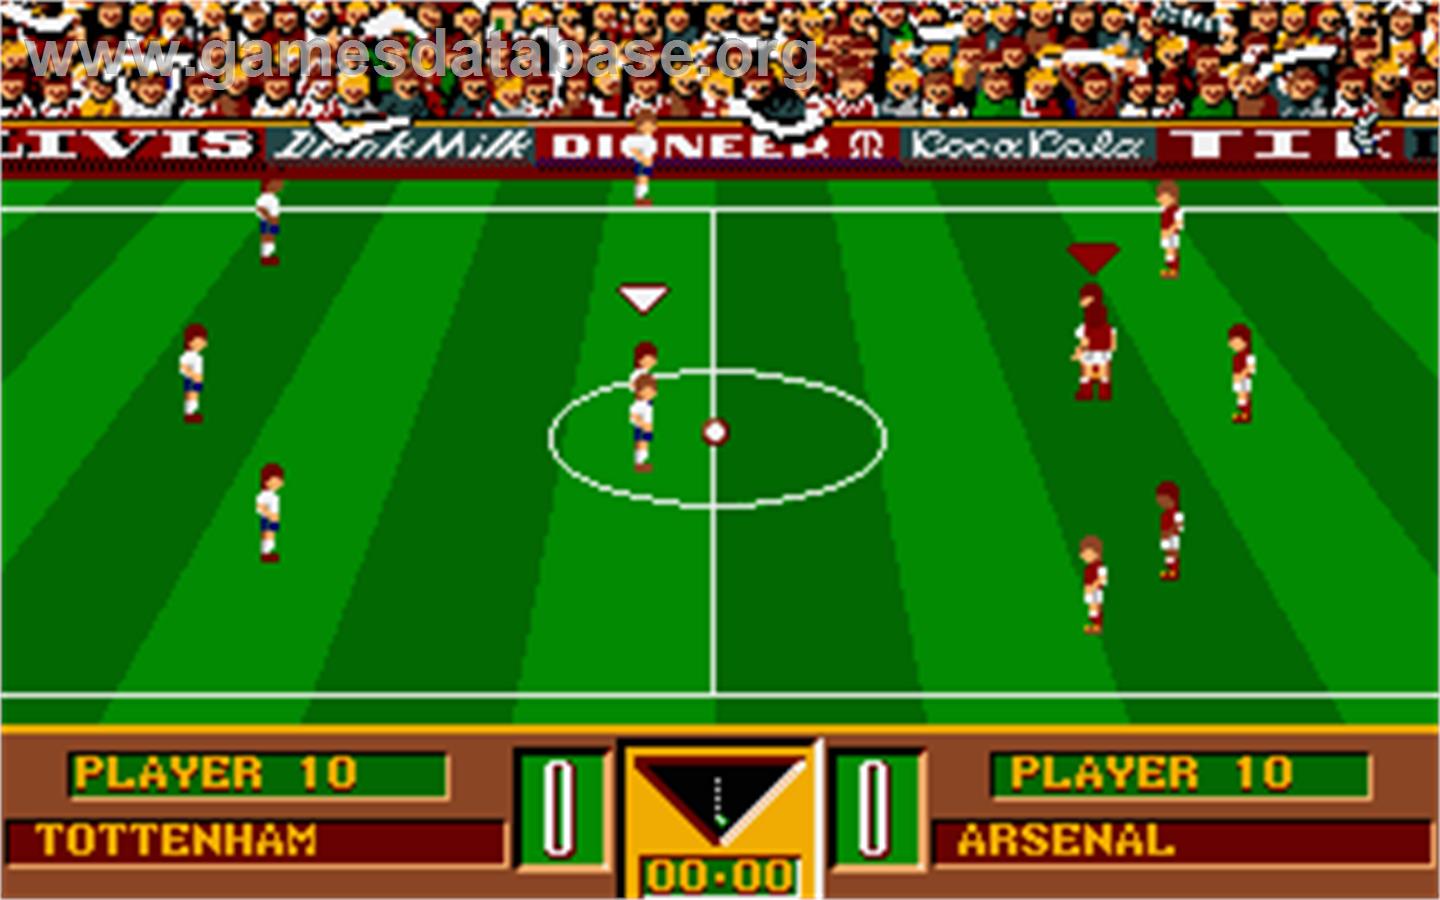 Gazza's Super Soccer - Atari ST - Artwork - In Game